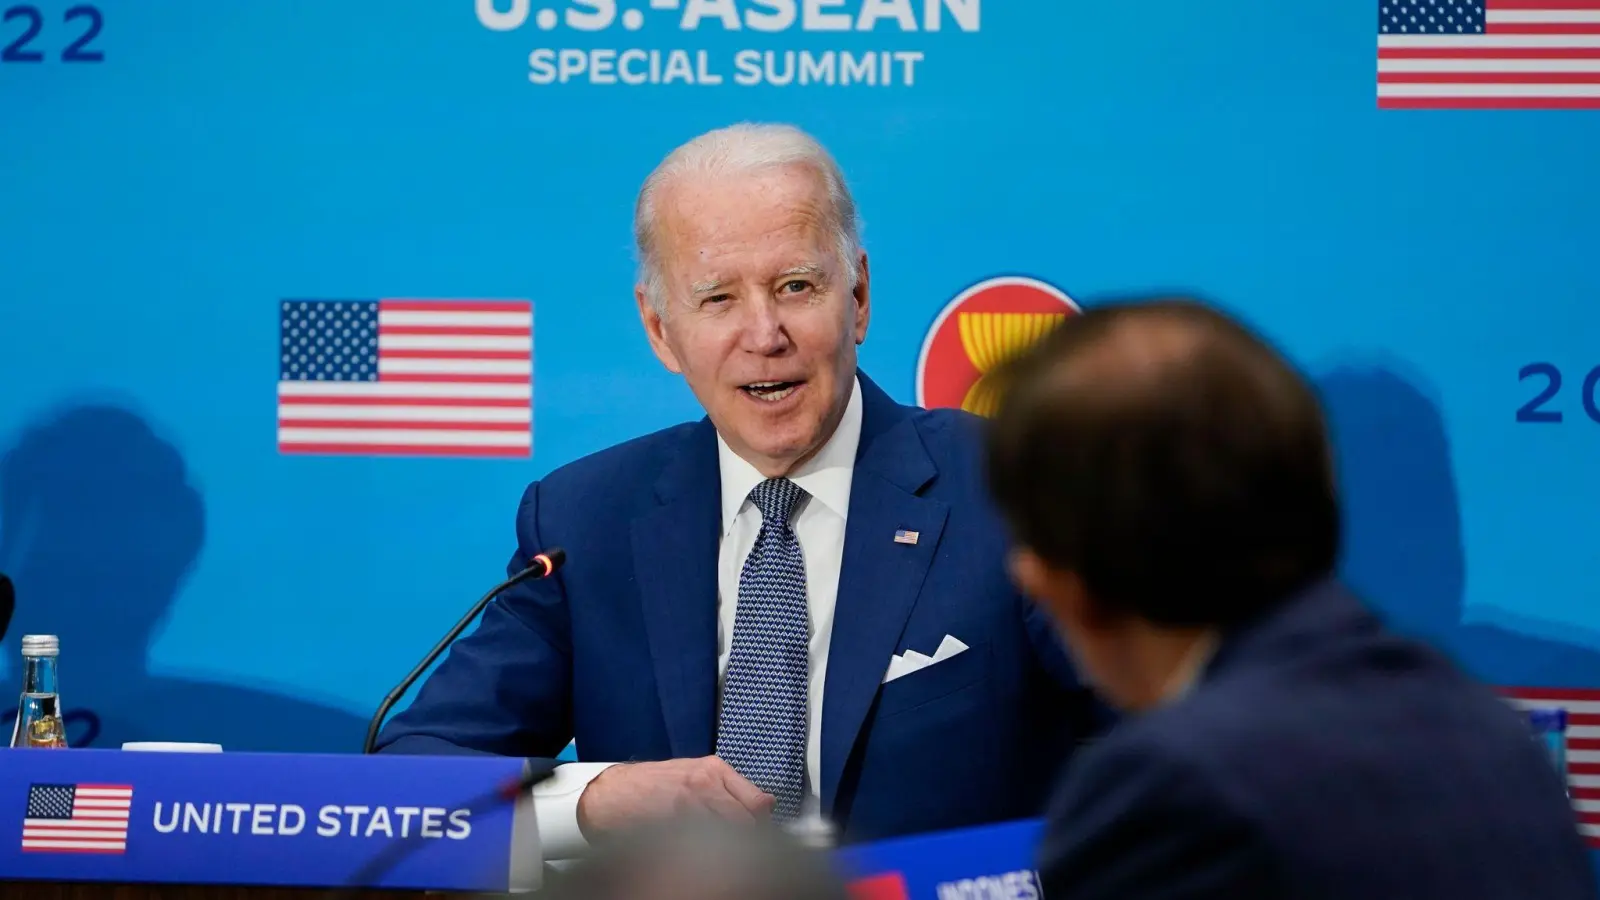 US-Präsident Joe Biden, Präsident der USA beim Sondergipfel zwischen den USA und dem Verband südostasiatischer Nationen (ASEAN) in Washington. (Foto: Susan Walsh/AP/dpa)